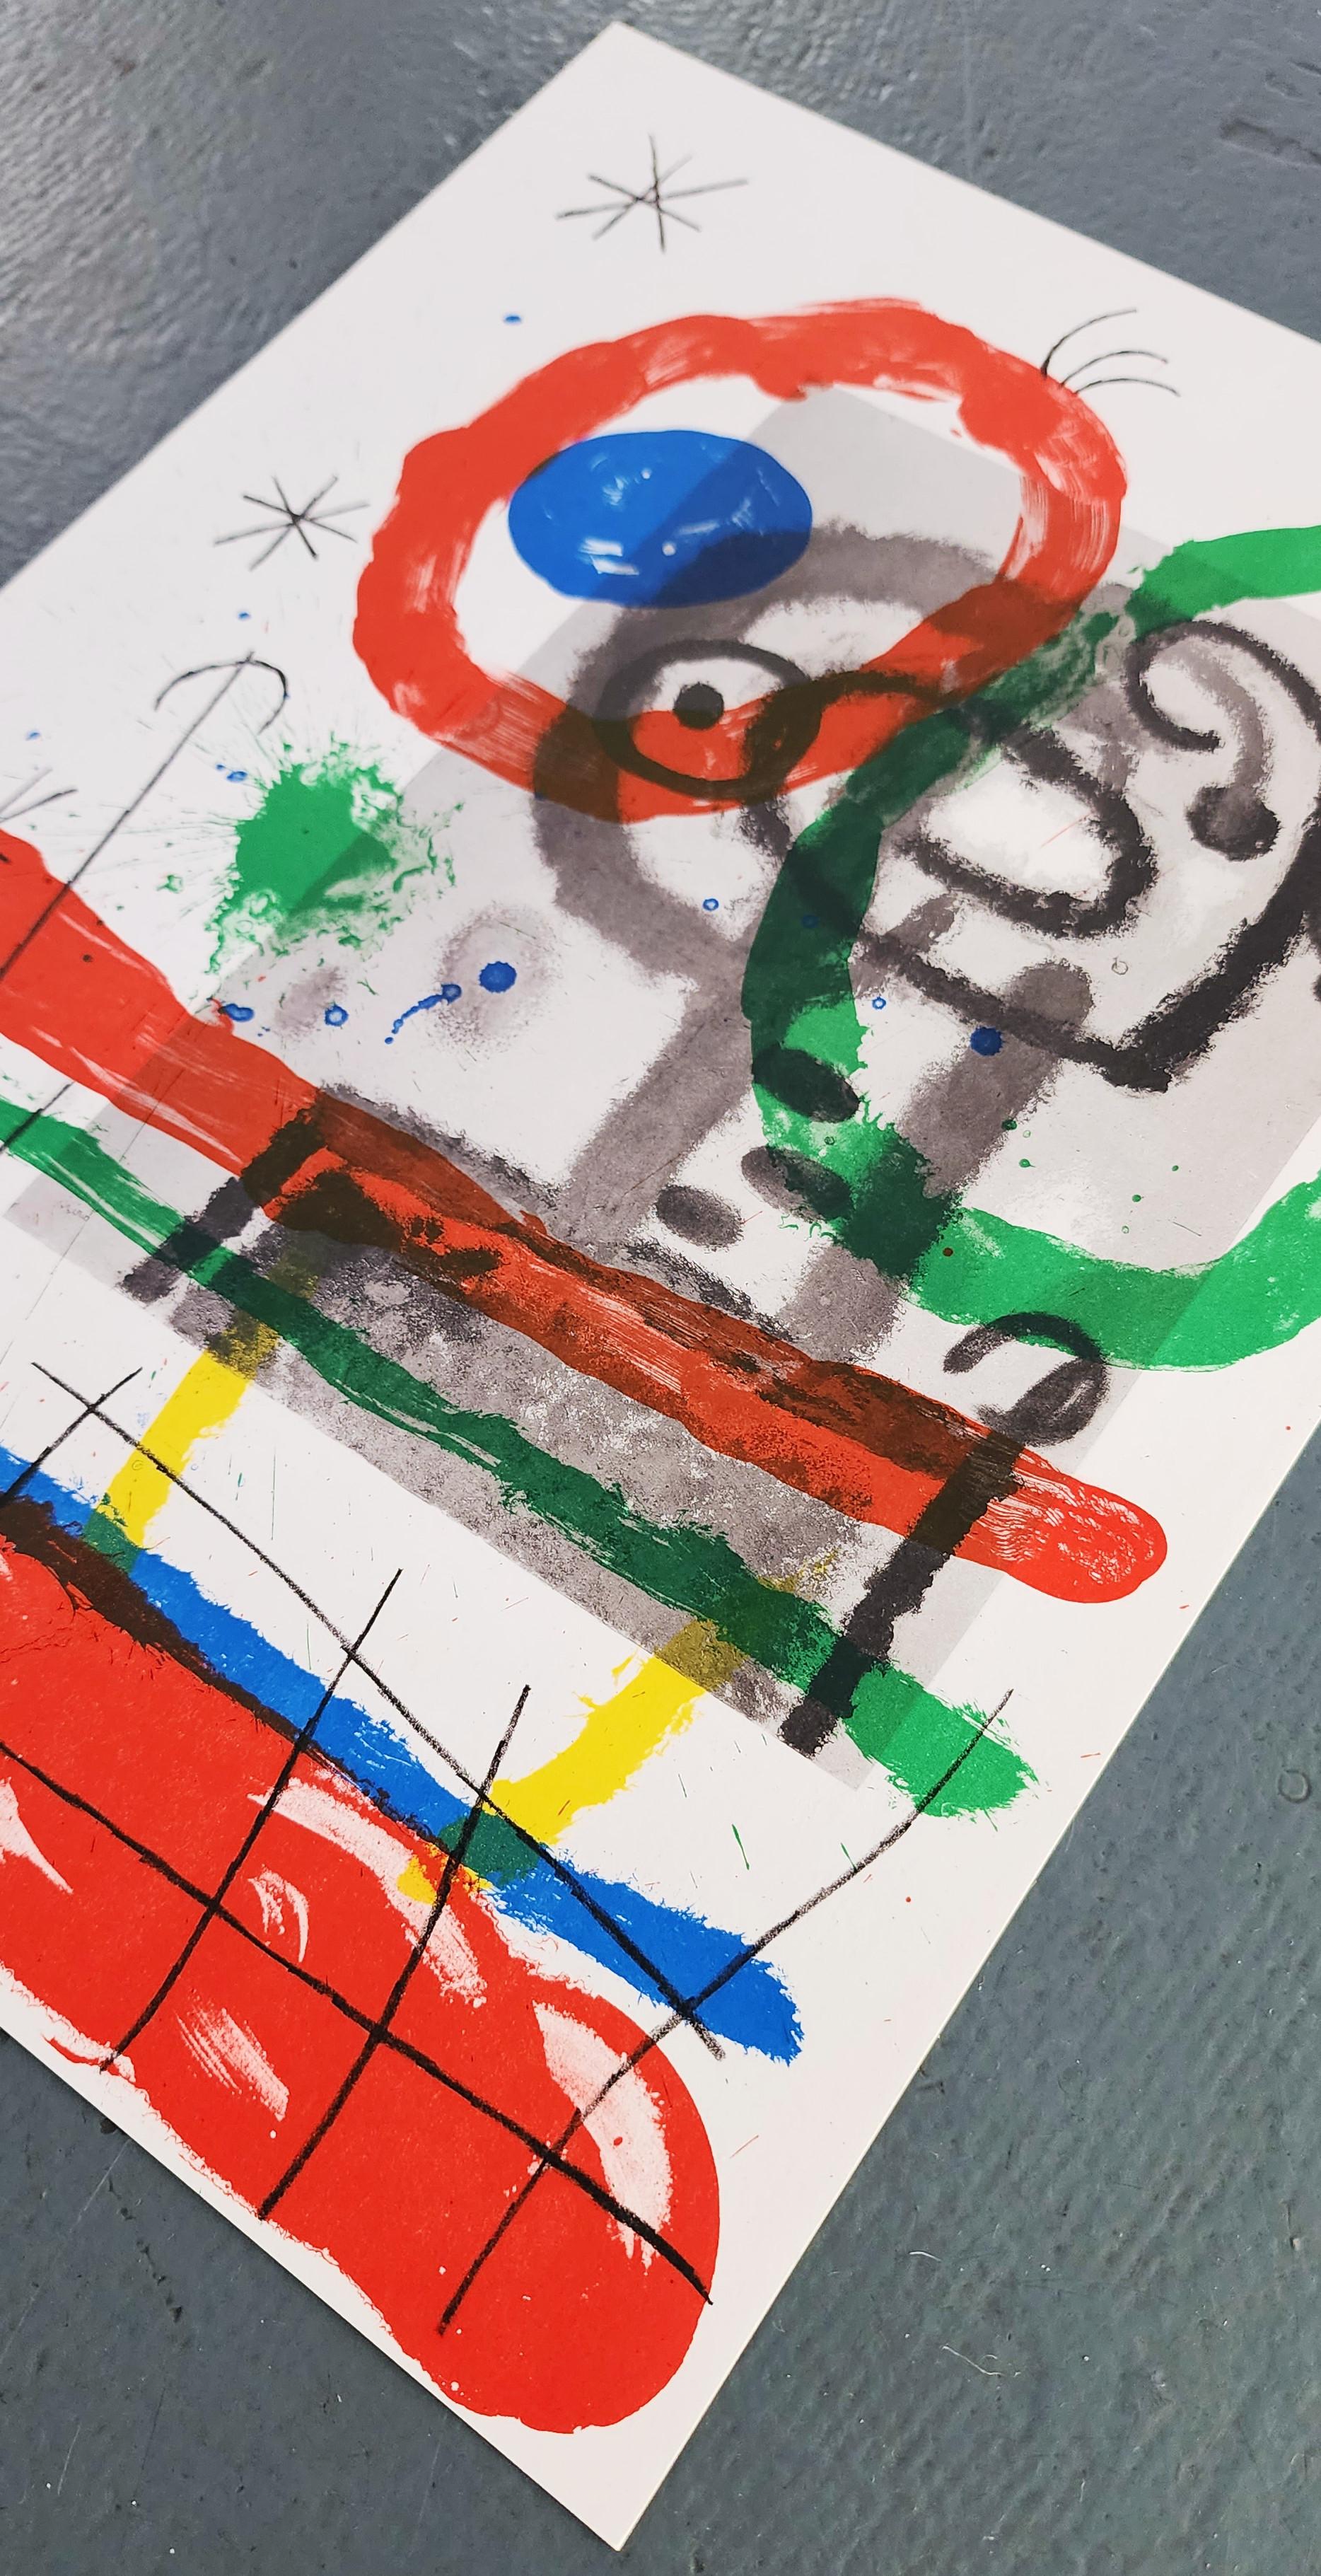 Joan Miro 
Lithographier Originale (Les Peintures Sur Carton De Miro)
Original Color Lithograph
Year: 1965
Size: 14.5x10.5in
Edition: 1,500 
Portfolio: DLM 151-152
Publisher: Maeght Editeur, Paris 1965
Catalogue Raisonné: Maeght Editeur,